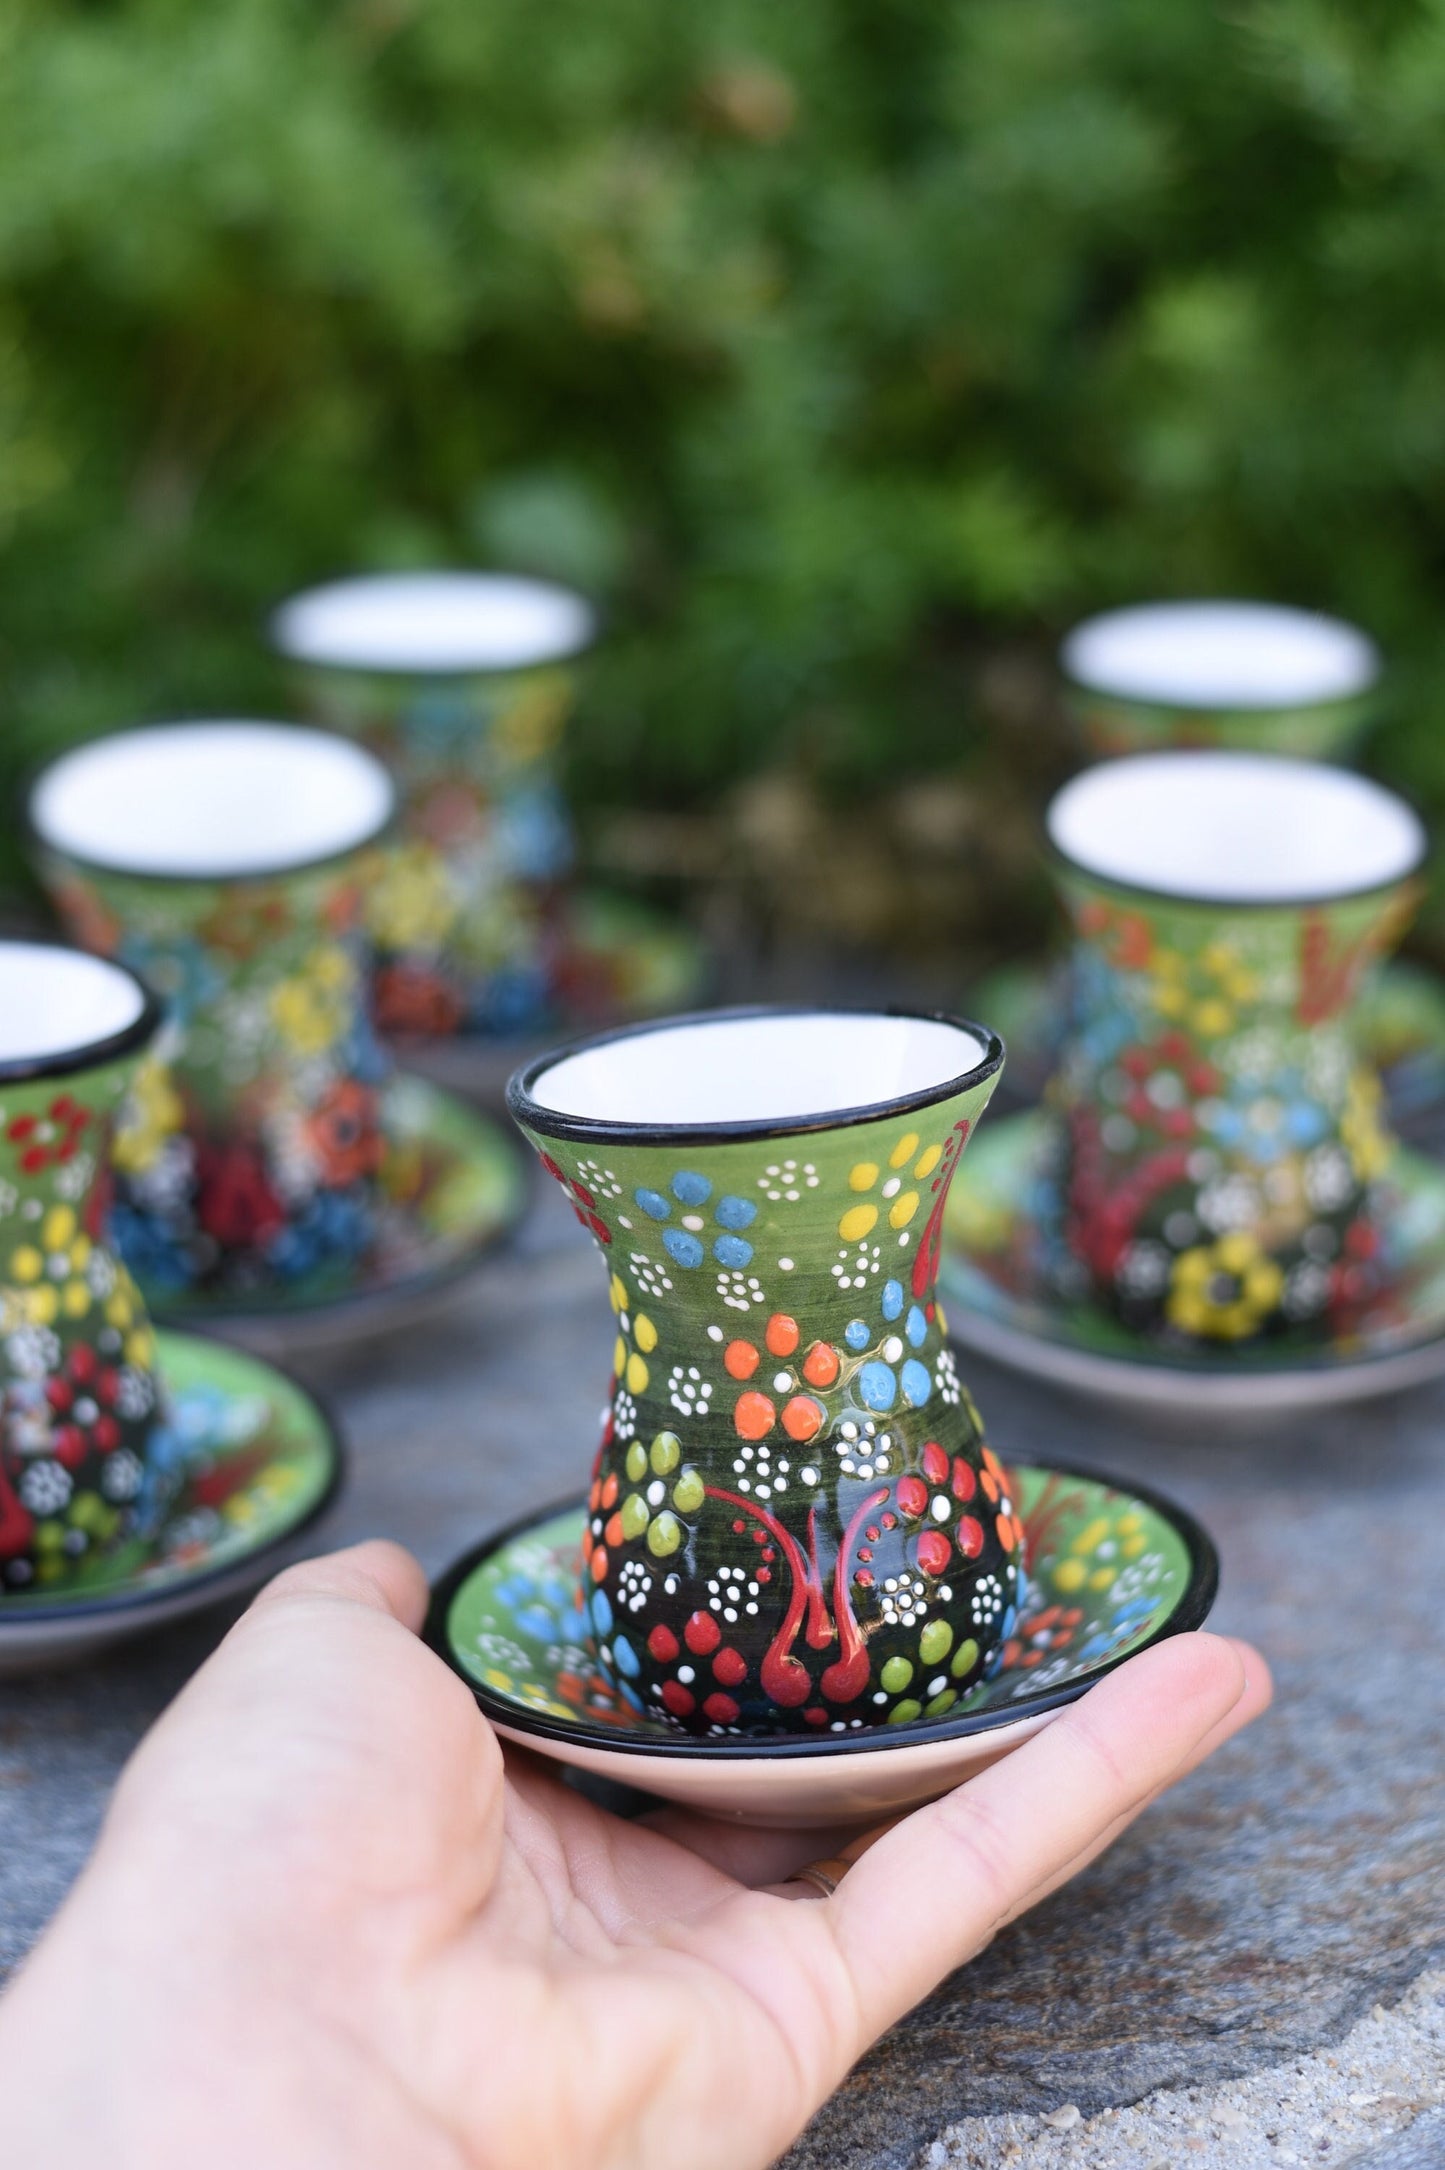 Handmade Turkish Ceramic Teacups